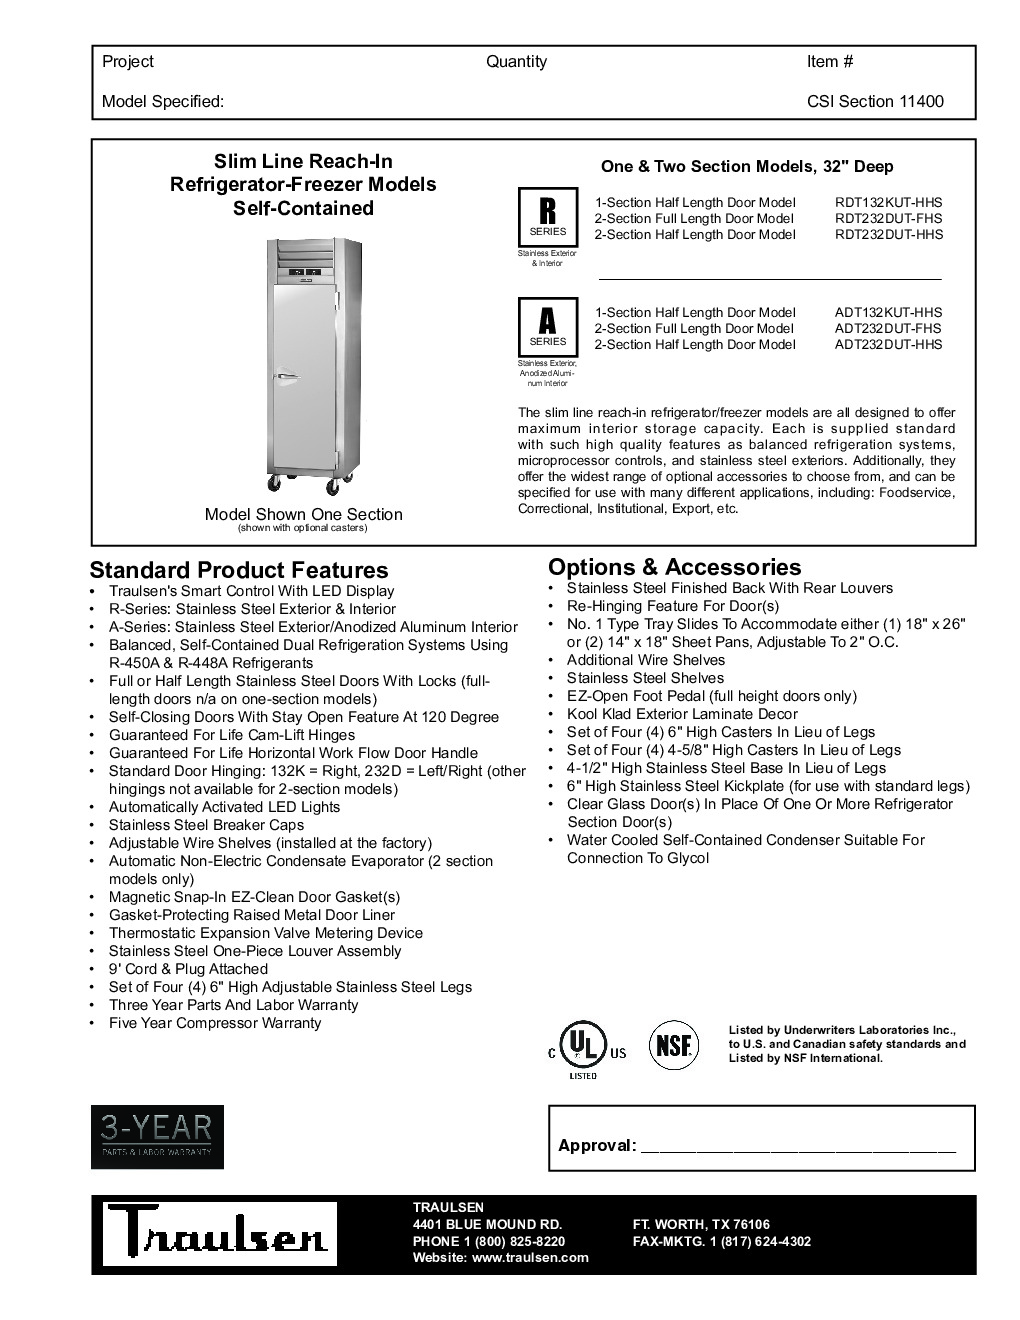 Traulsen ADT232DUT-HHS Reach-In Refrigerator Freezer